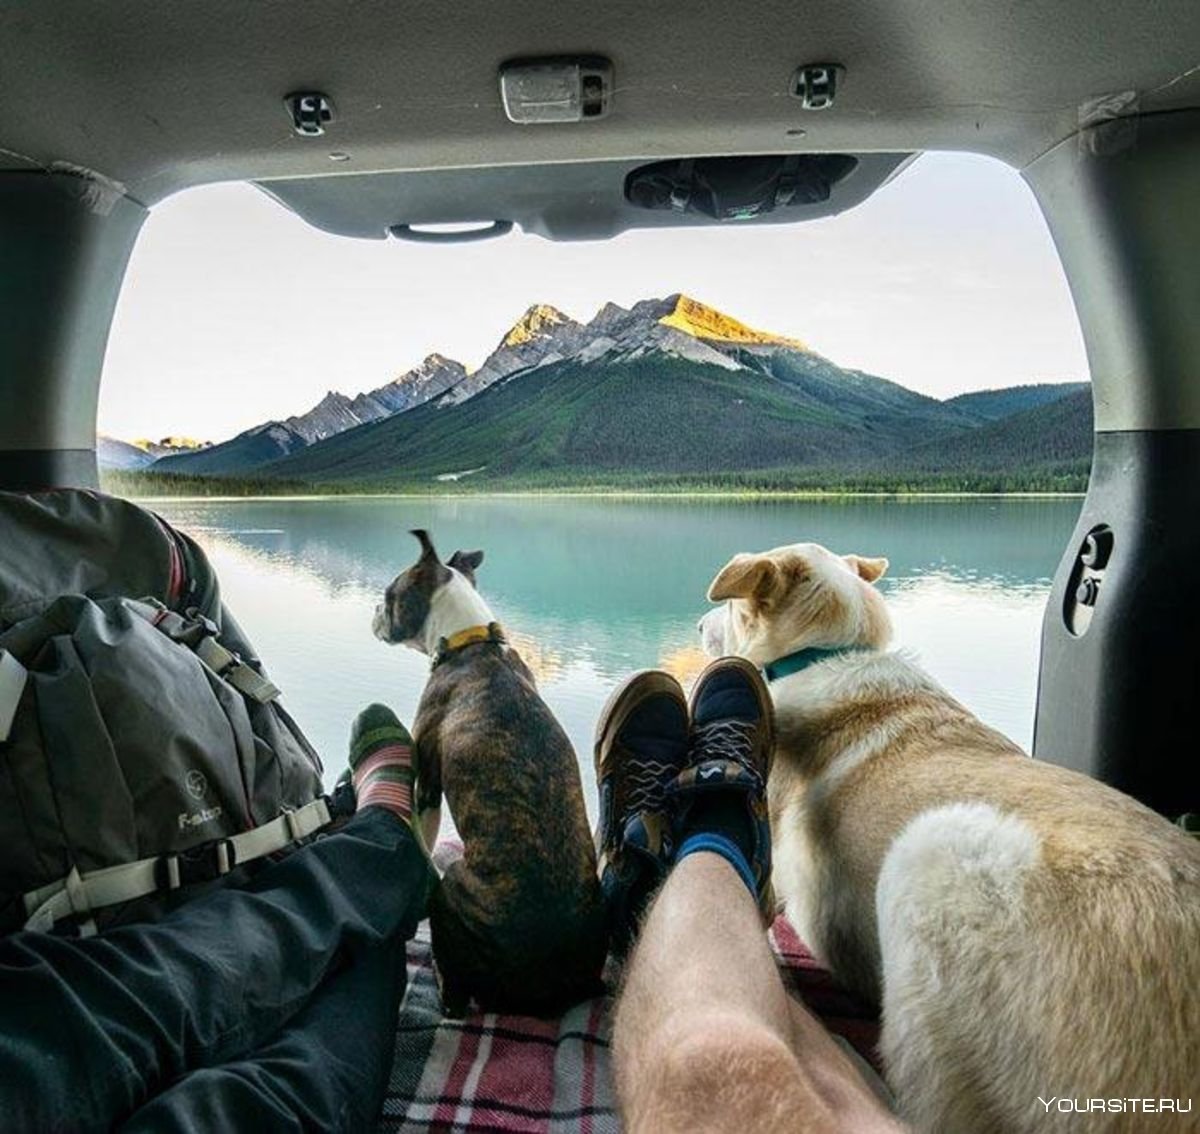 Кругосветное путешествие вместе. Путешествие с собакой. Путешествие на автомобиле. Собака путешествует. Авто для путешествий.